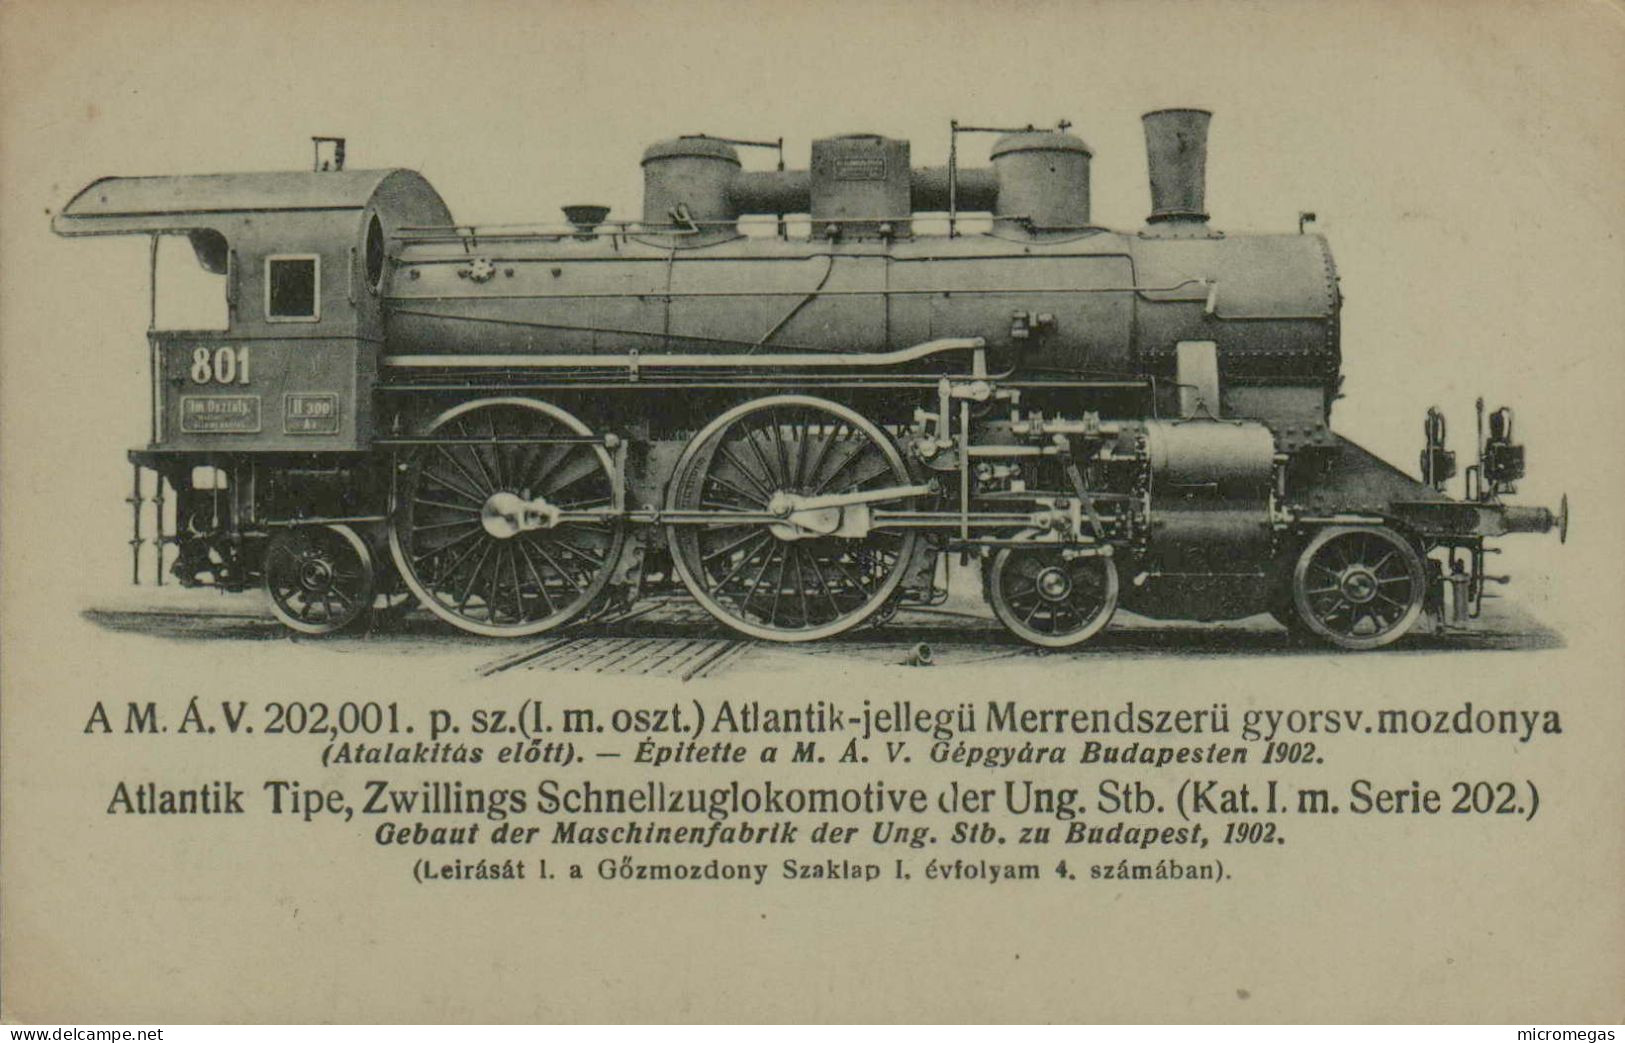 Ungarischen Staatsbahn Lokomotive, Type Atlantic, Serie 202 - Budapest, 1902 - Eisenbahnen